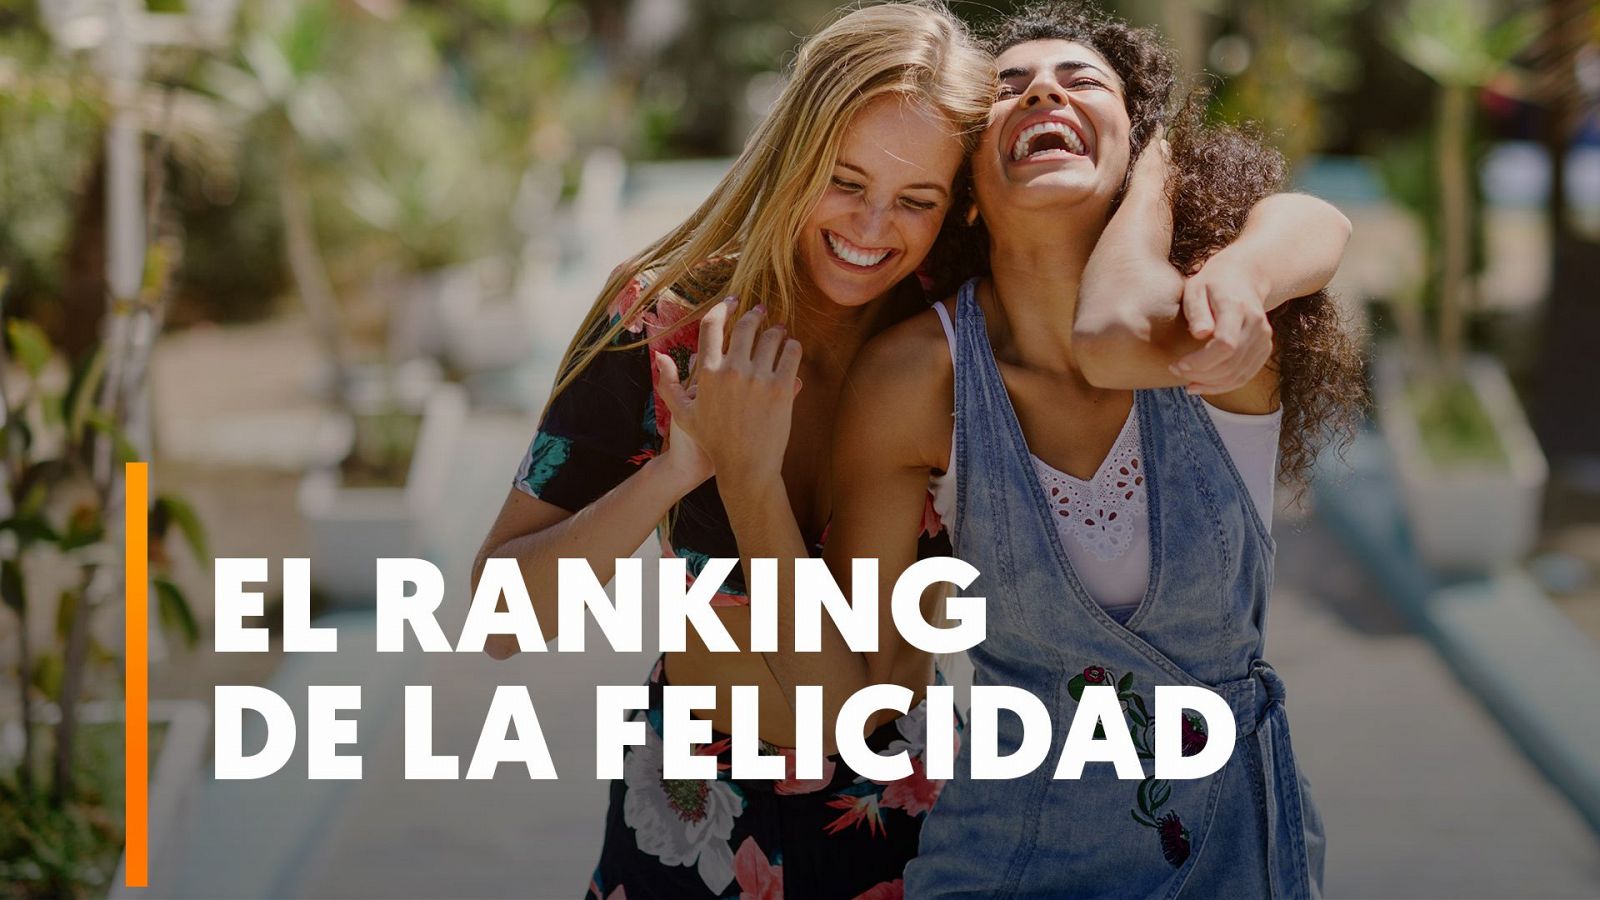 Finlandia se sitúa como el país más feliz del mundo y España baja al puesto 36 en la clasificación